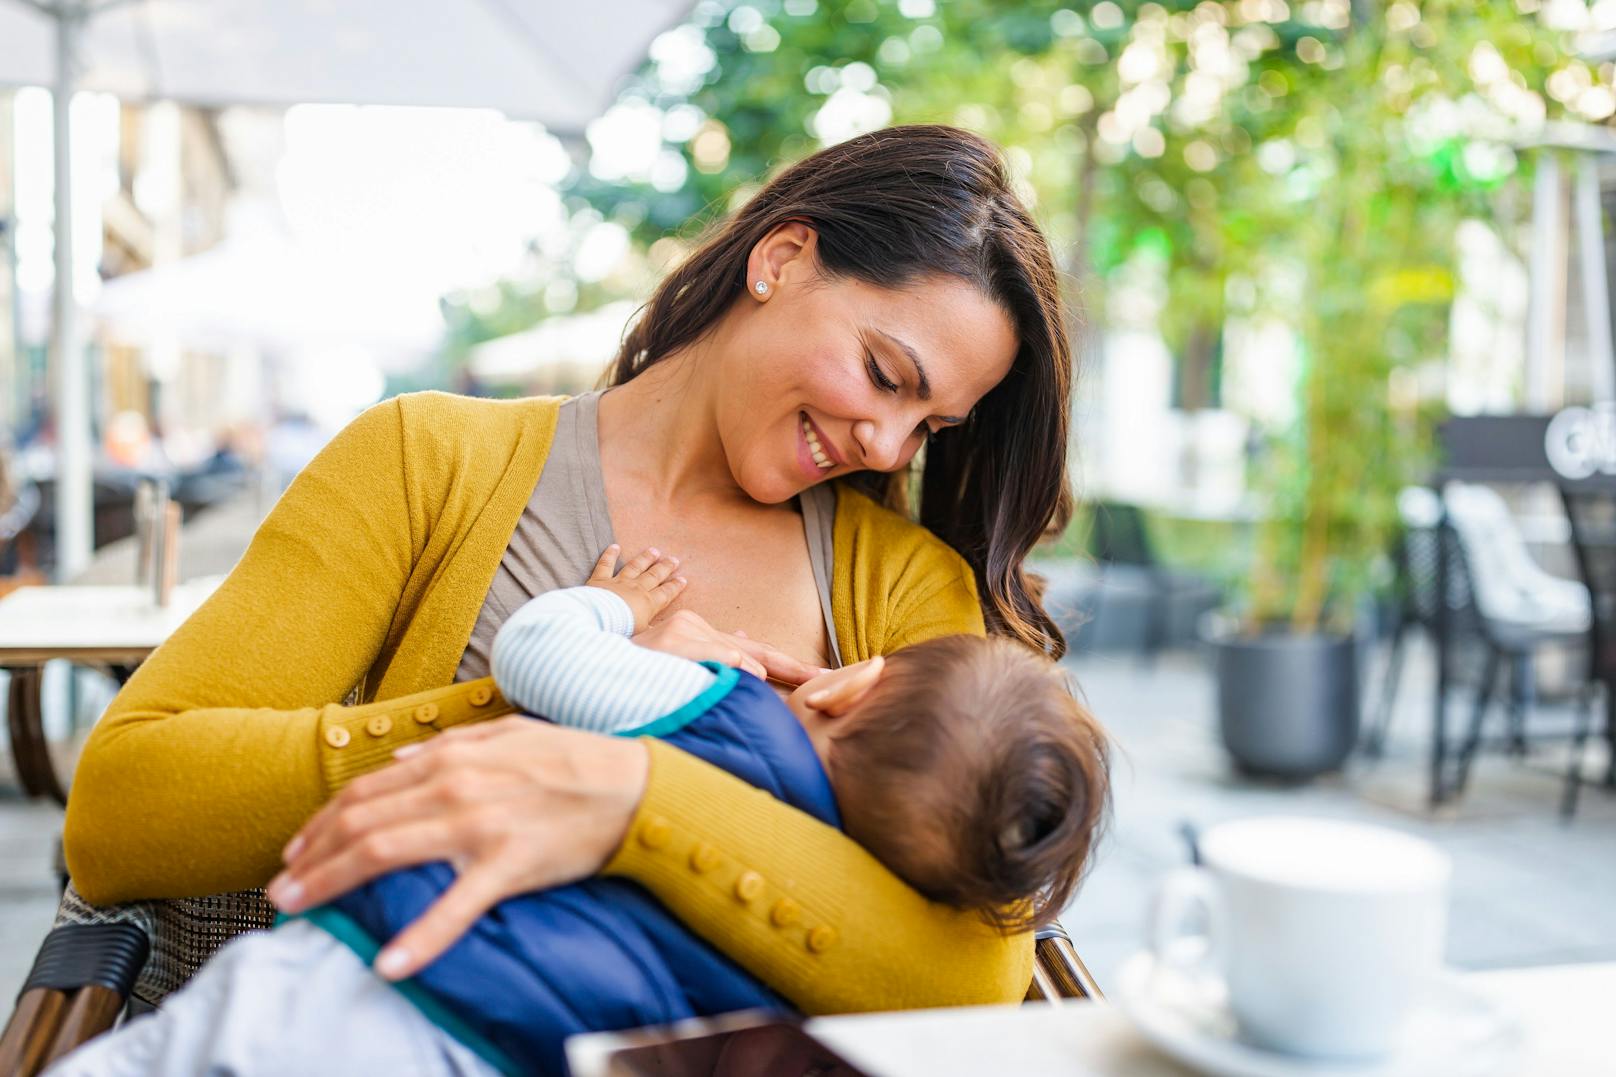 Zwei Drittel der Mütter haben bereits negative Erfahrungen beim öffentlichen Stillen ihres Babys gemacht.